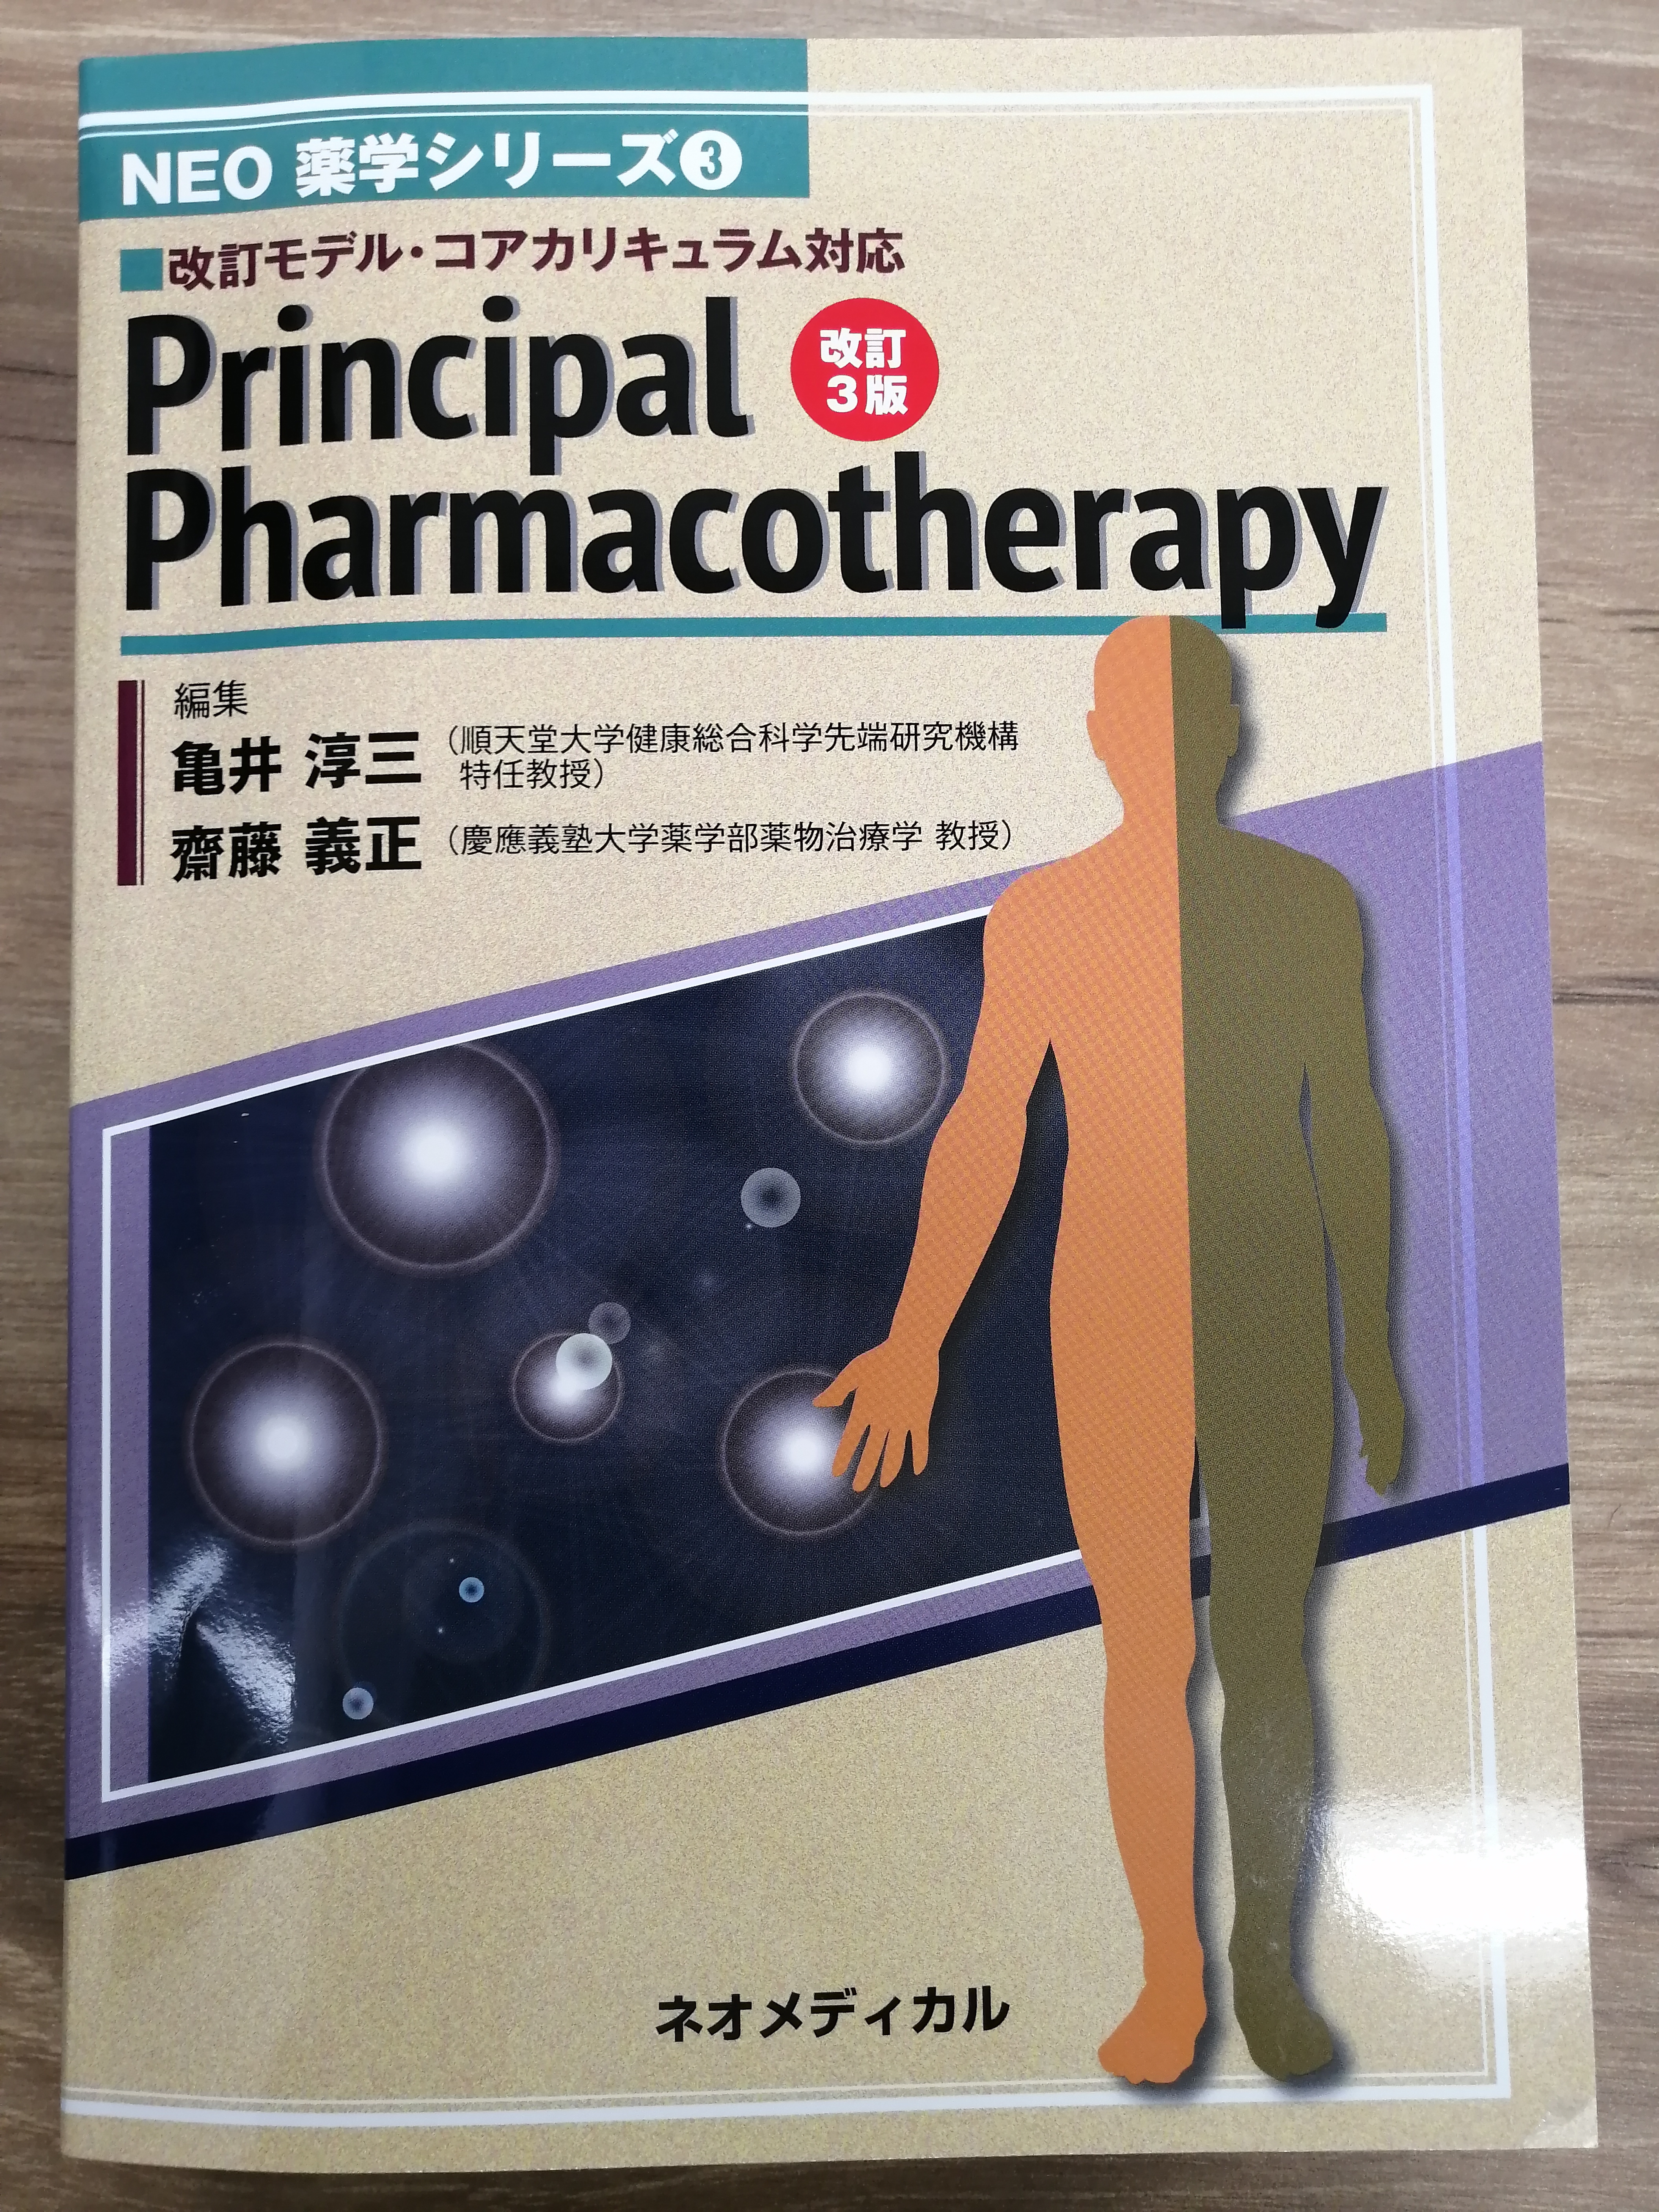 Principal Pharmacotherapy 改訂3版が出版されました。 | 慶應義塾大学 